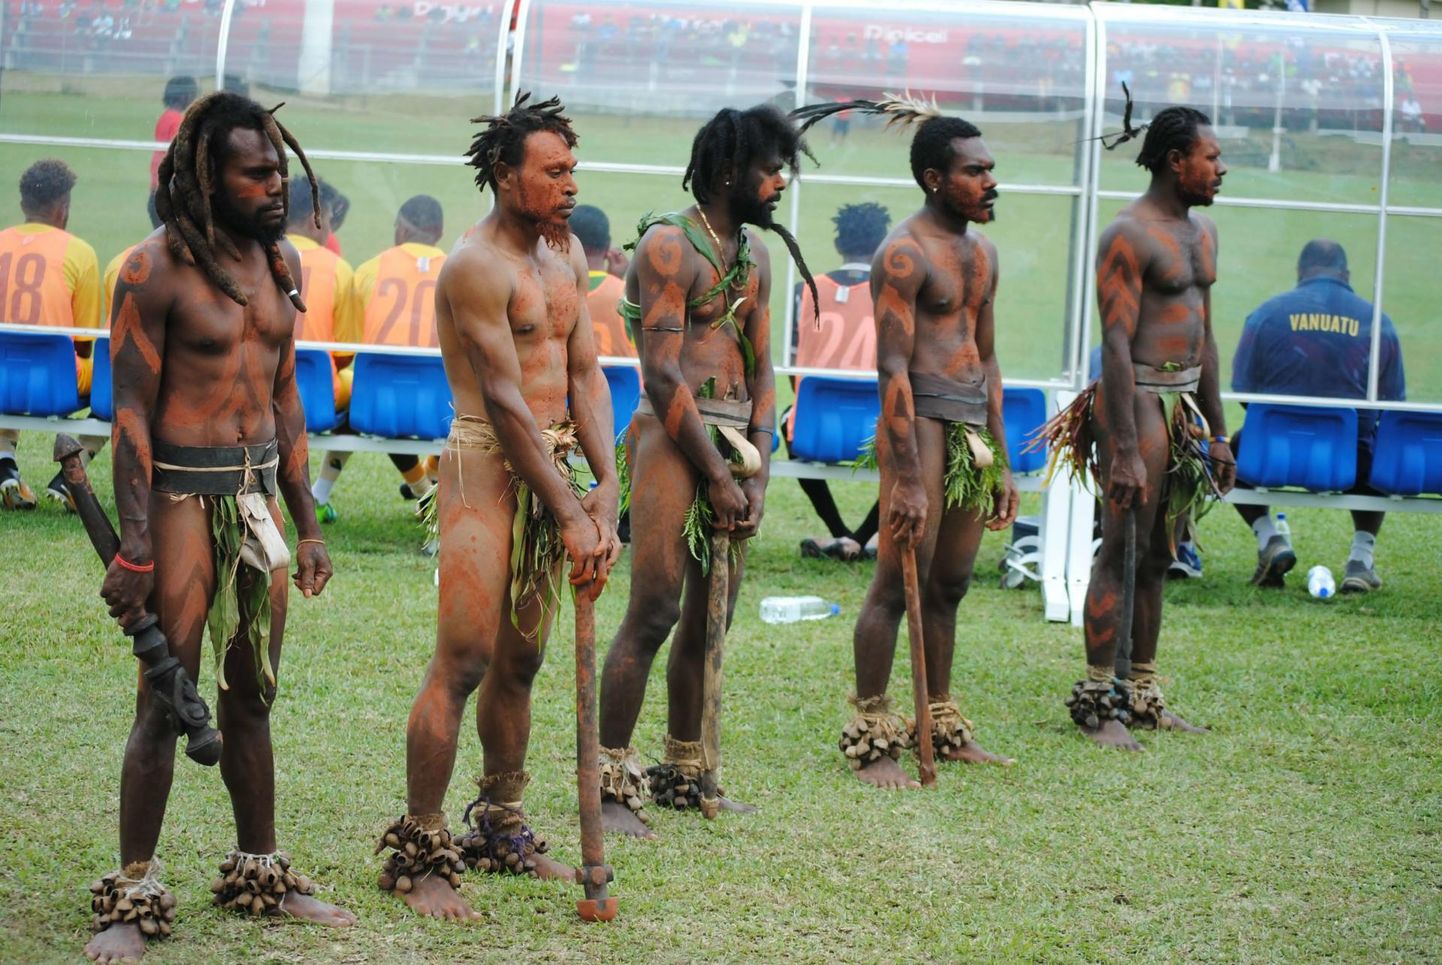 Vanuatu ja Eesti koondise maavõistlus jalgpallis. Vanuatu koondise vahetuspingi taga seisavad auvalves rahvarõivais kohalikud.